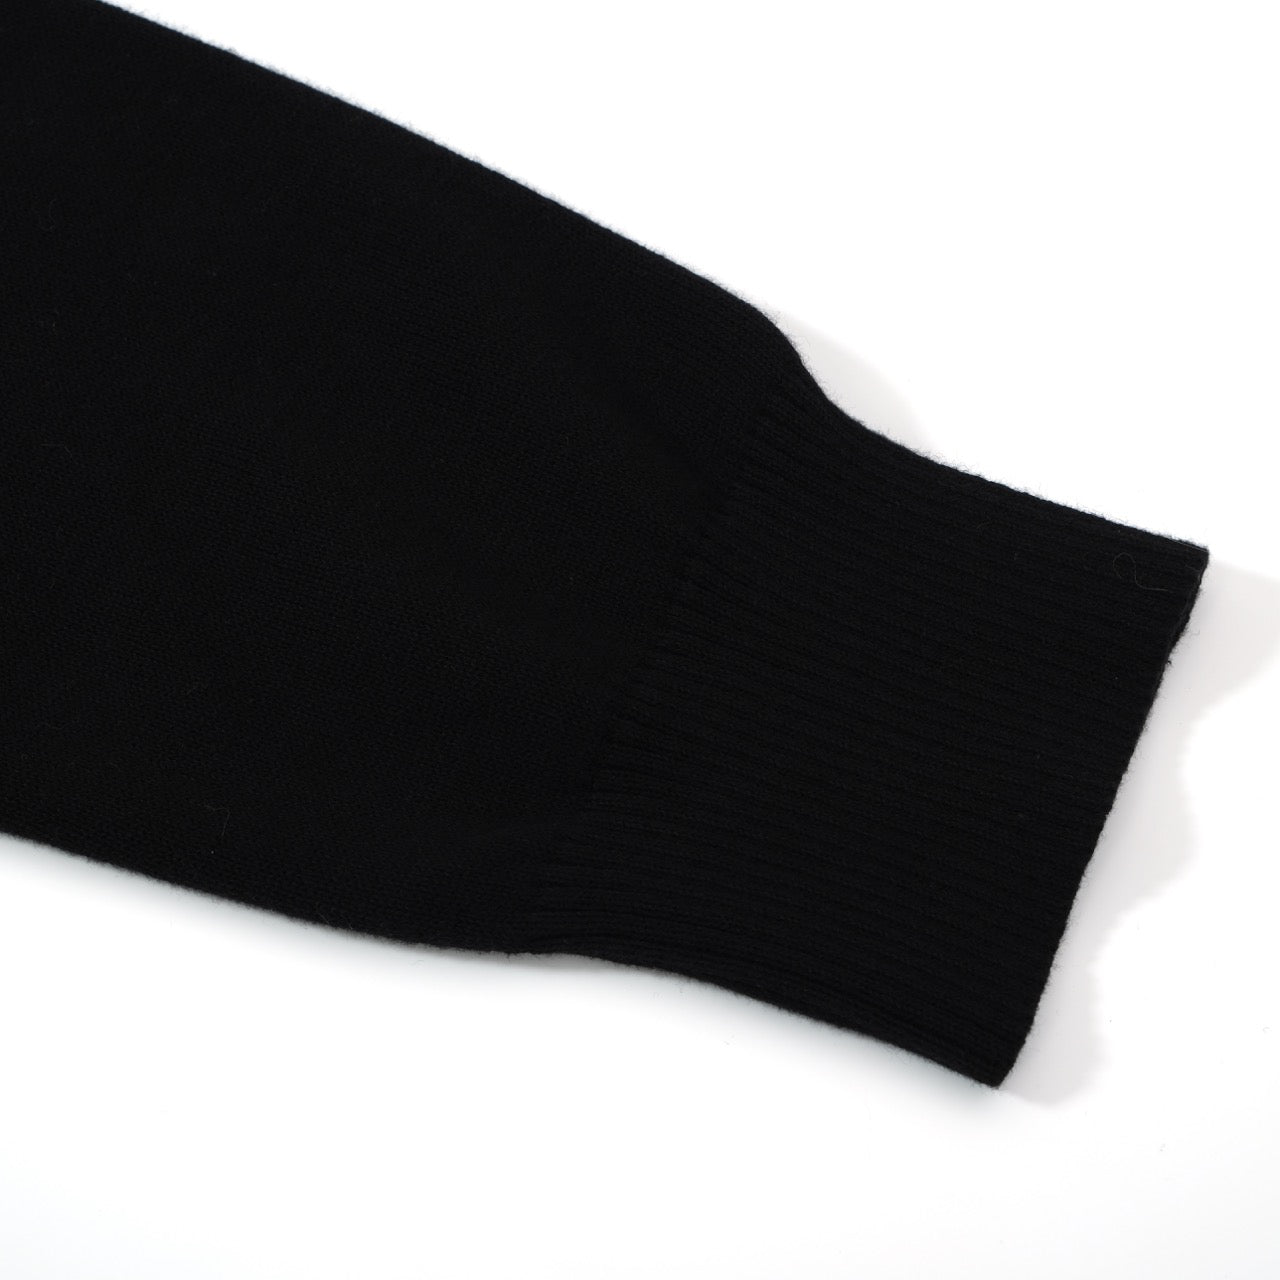 Cardigan décontracté à rayures sur la poitrine classique des années 1970 pour hommes à travers le cardigan rétro tricoté noir